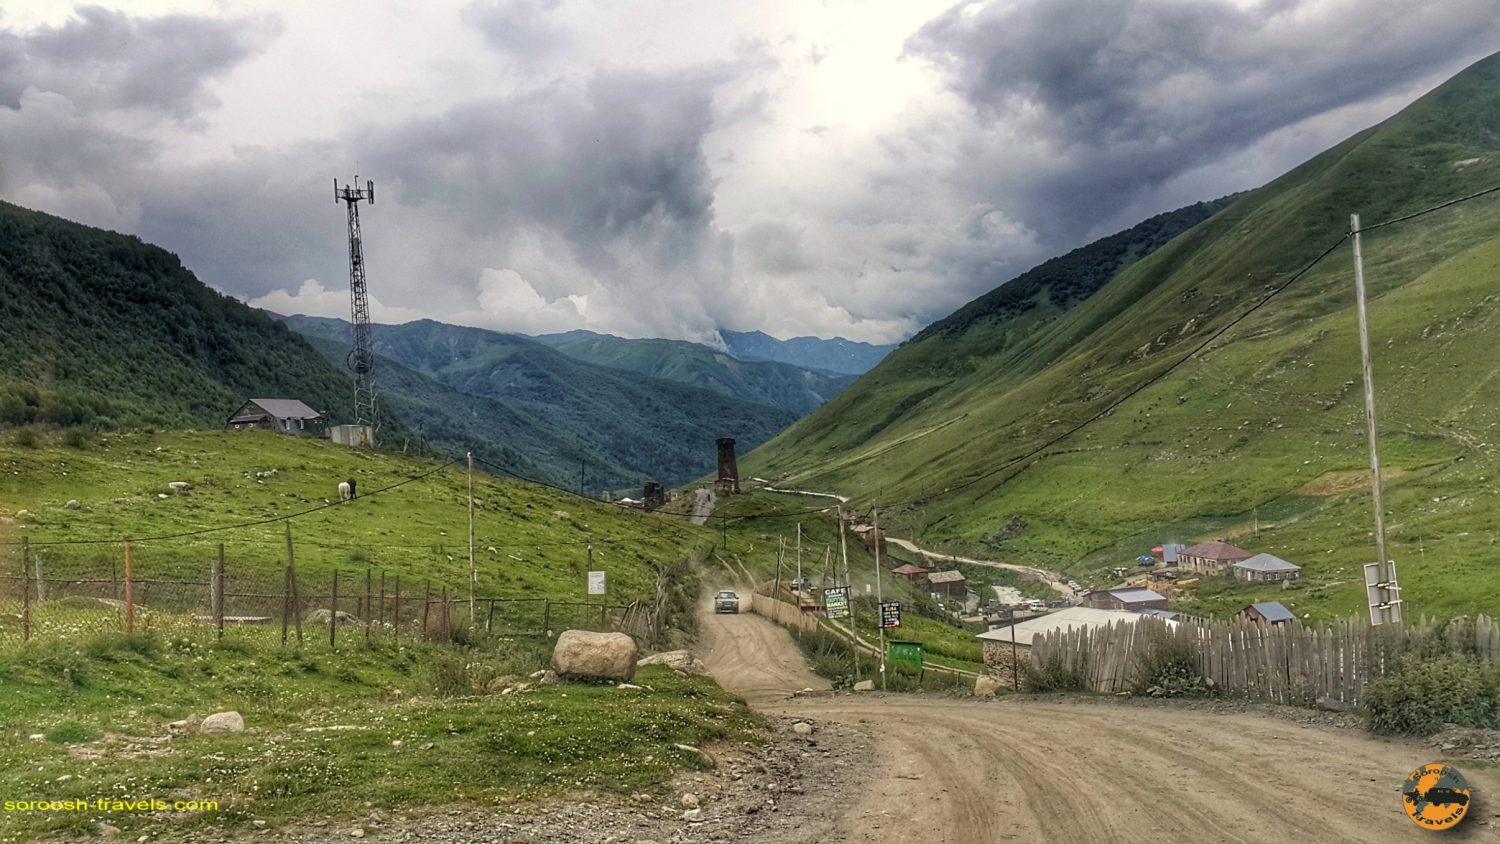 منطقه اوشگولی در گرجستان - تابستان 1398 2019